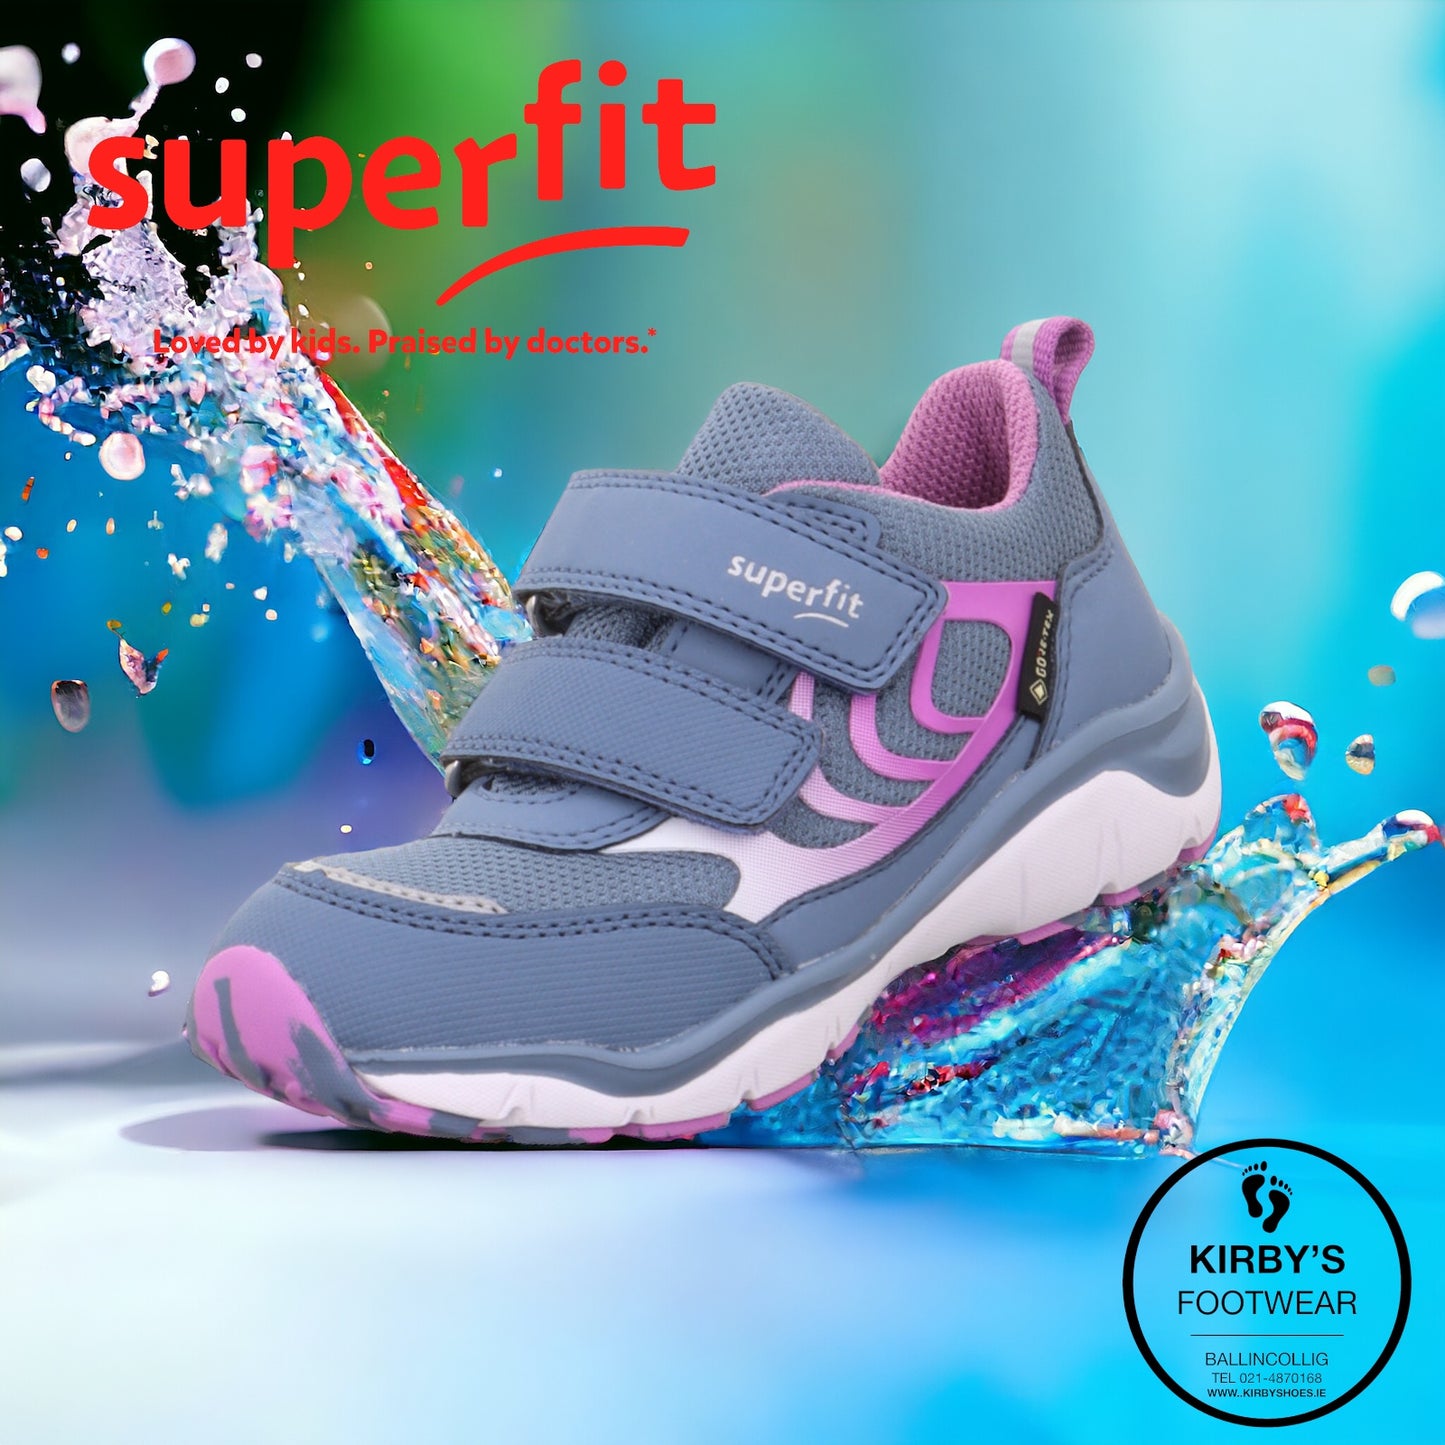 SuperFit waterproof sport 5 goretex blue/pink